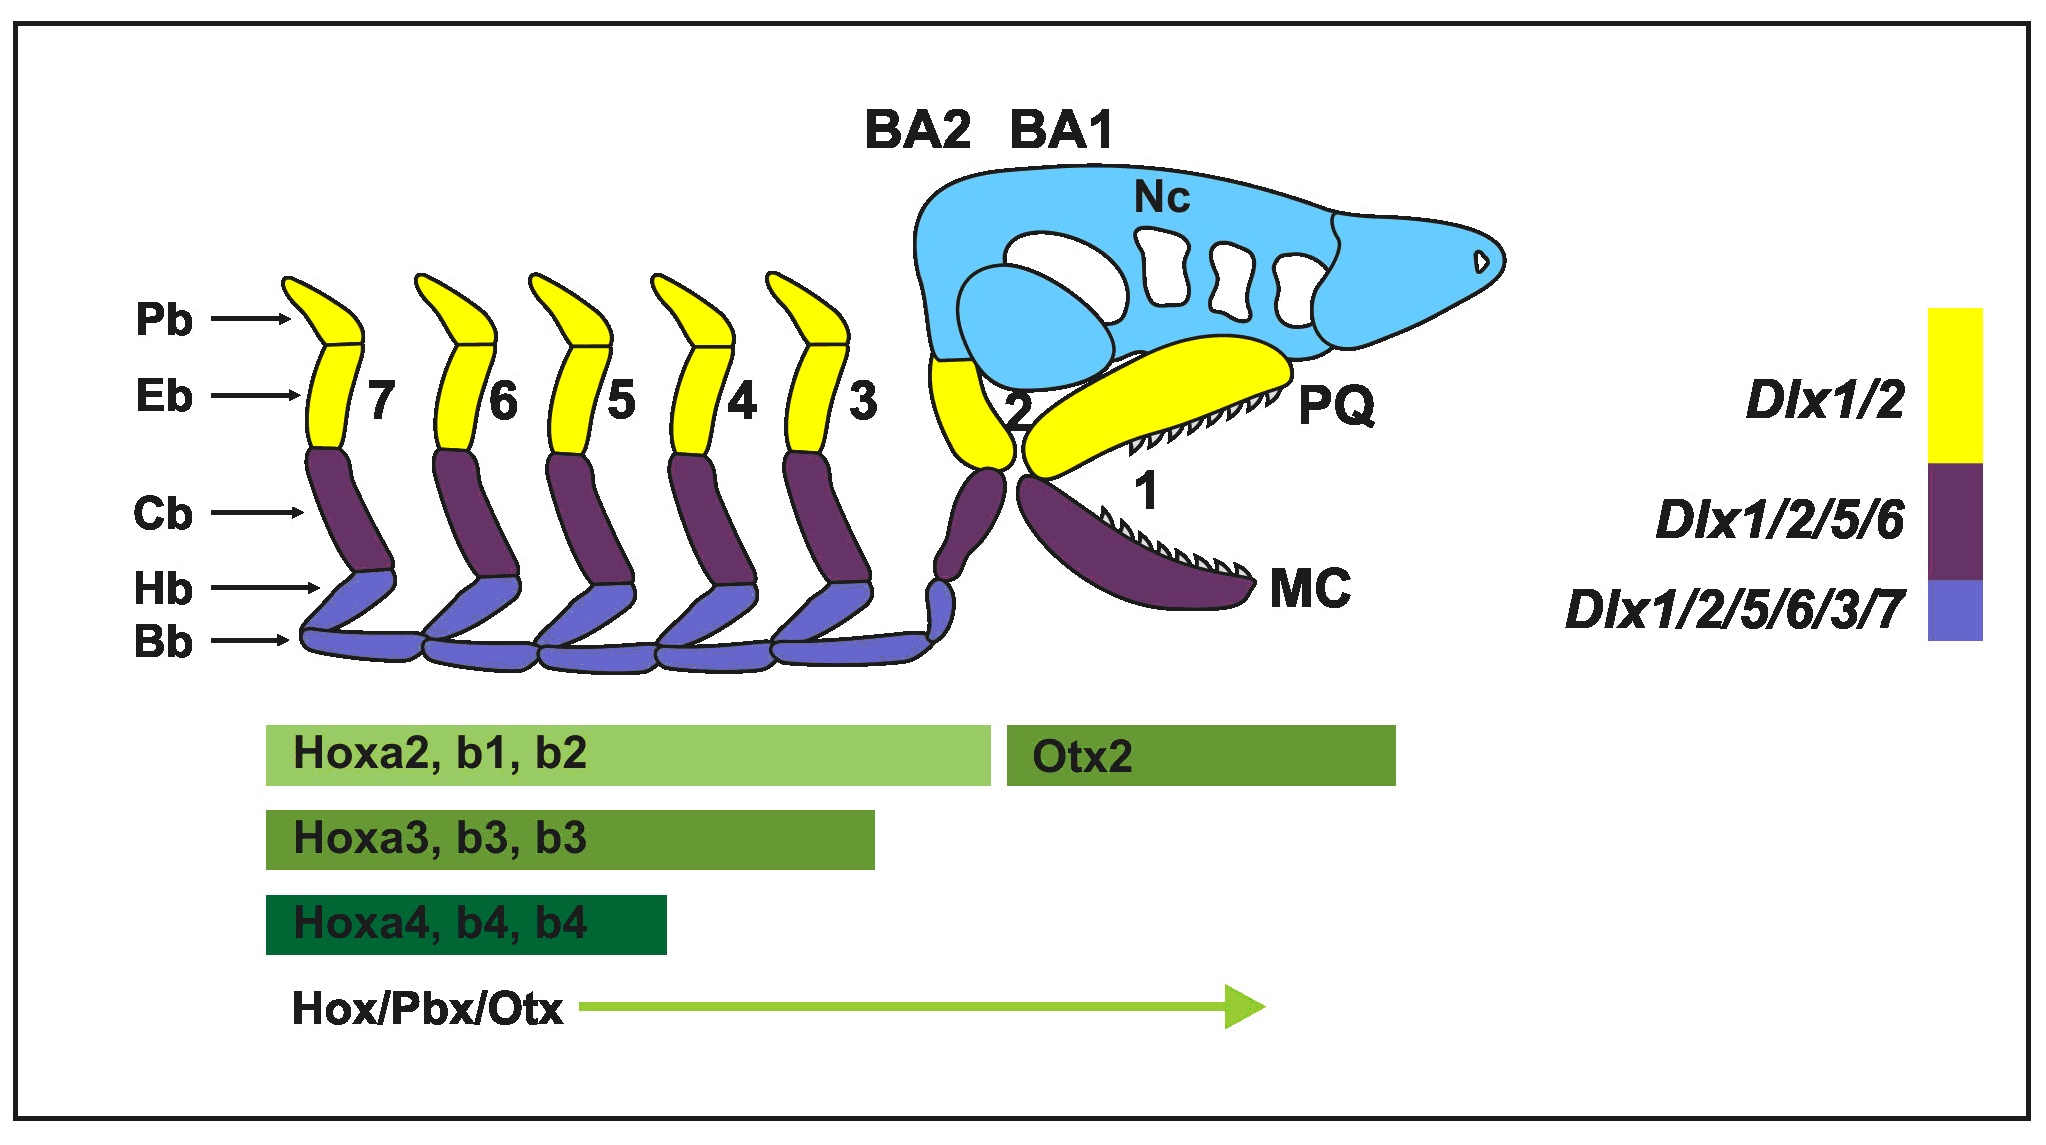 A Dlx gének szabályozzák a zsigei ívek és az állkapocs mintázatát. A Gnathostomaták (állkapcsosok) zsigeri ívei metamerikus struktúrák, amelyek a szkeletális elemek proximo-disztális sorozatából állnak. A Dlx2 és Dlx5 gének egymásba ágyazott doménekben fejeződnek ki az egér zsigeri íveiben. Alul: Elő-Gnathostomata neurocraniuma (Nc) és a hozzá kapcsolódó zsigeri ívek (1-7). A zsigeri ívek egyediségét a Hox, Pbx és Otx gének határozzák meg (zöld nyíl). Feltételezik, hogy a Dlx gének egymásba ágyazott kifejeződésének kialakulása majd a zsigeri ívek rákövetkező kiegyénülése a Gnathostomata evolúció során alakult ki. BA: branchyal arch = zsigeri ív; Bb: basibranchyális; Cb: Ceratobranchyális; Eb: Epibranchyális; Hb: hypobranchyális; Hy: Hyoid ív; MC: Meckel-féle porc; md: mandibuláris ív; mx: maxilláris ív; Pb: pharyngeobranchyális; PQ: palatoquadrátum